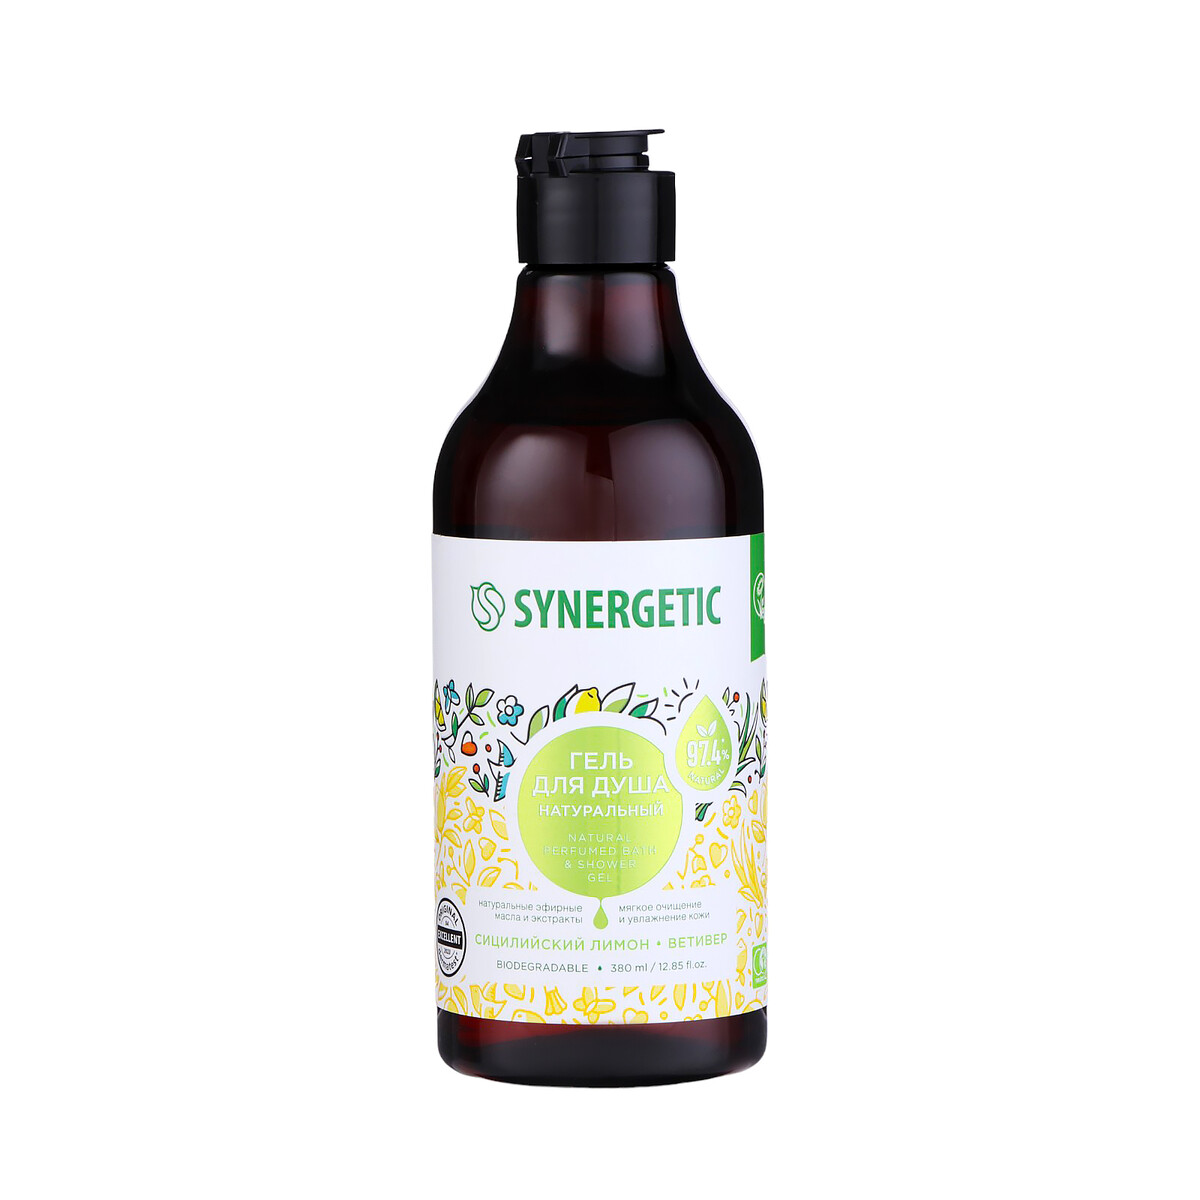 Натуральный биоразлагаемый гель для душа synergetic сицилийский лимон и ветивер, 380 мл Synergetic